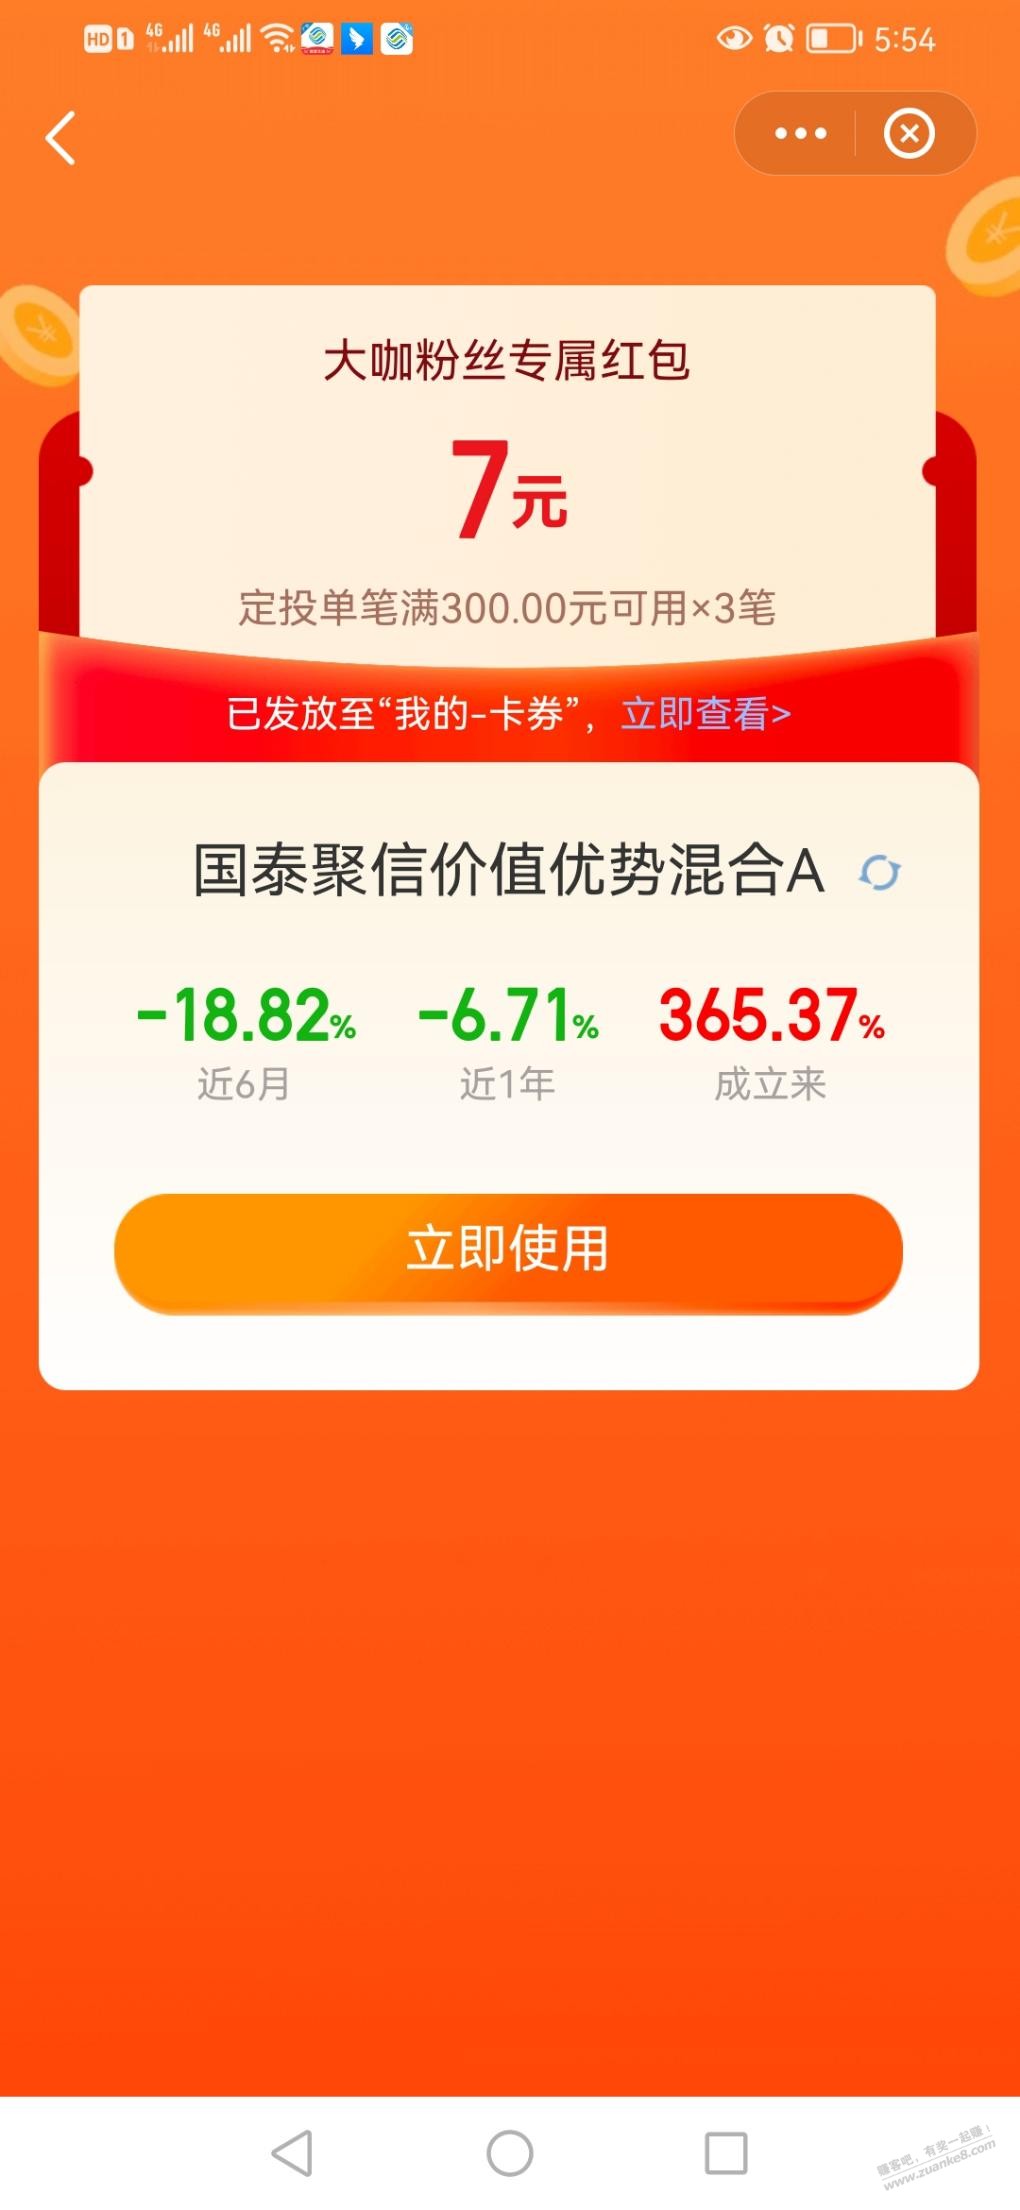 天天基金app 7元 定投券